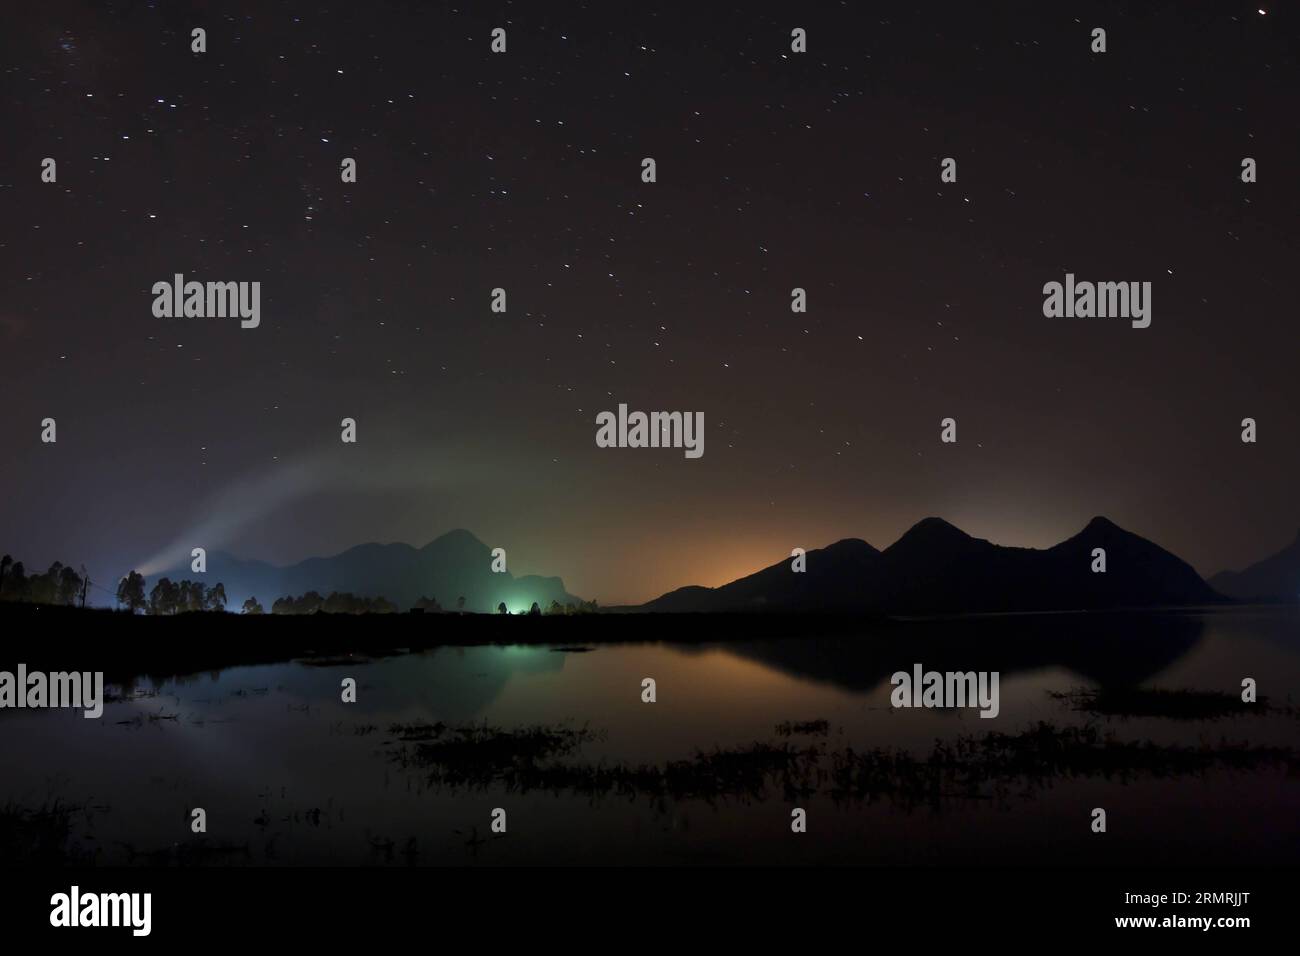 (140723) -- LIUZHOU, July 23, 2014 (Xinhua) -- Stars are seen in the sky above Liucheng County in Liuzhou City, south China s Guangxi Zhuang Autonomous Region, July 21, 2014. (Xinhua/Deng Keyi) (ry) CHINA-GUANGXI-LIUZHOU-NIGHT SCENERY (CN) PUBLICATIONxNOTxINxCHN   Liuzhou July 23 2014 XINHUA Stars are Lakes in The Sky above Liucheng County in Liuzhou City South China S Guangxi Zhuang Autonomous Region July 21 2014 XINHUA Deng Keyi Ry China Guangxi Liuzhou Night scenery CN PUBLICATIONxNOTxINxCHN Stock Photo